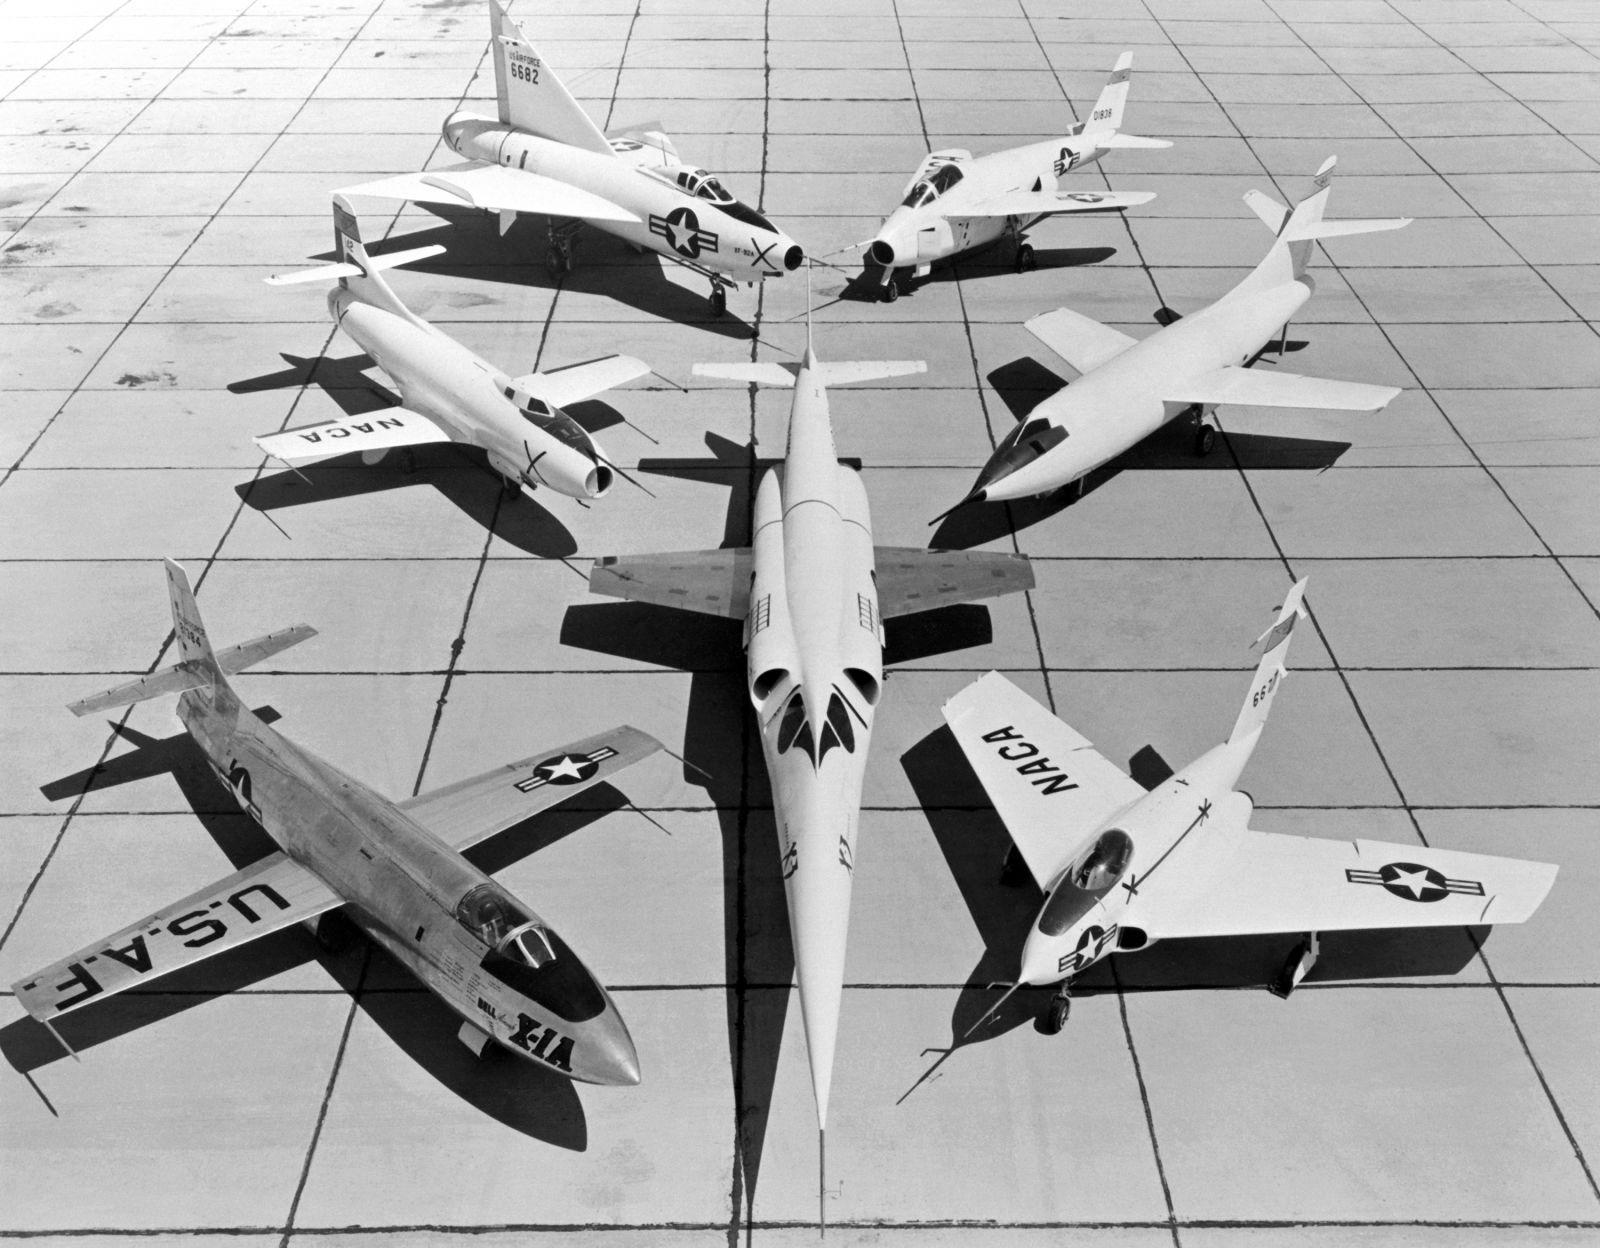 1953 NACA experimental aircraft group shot